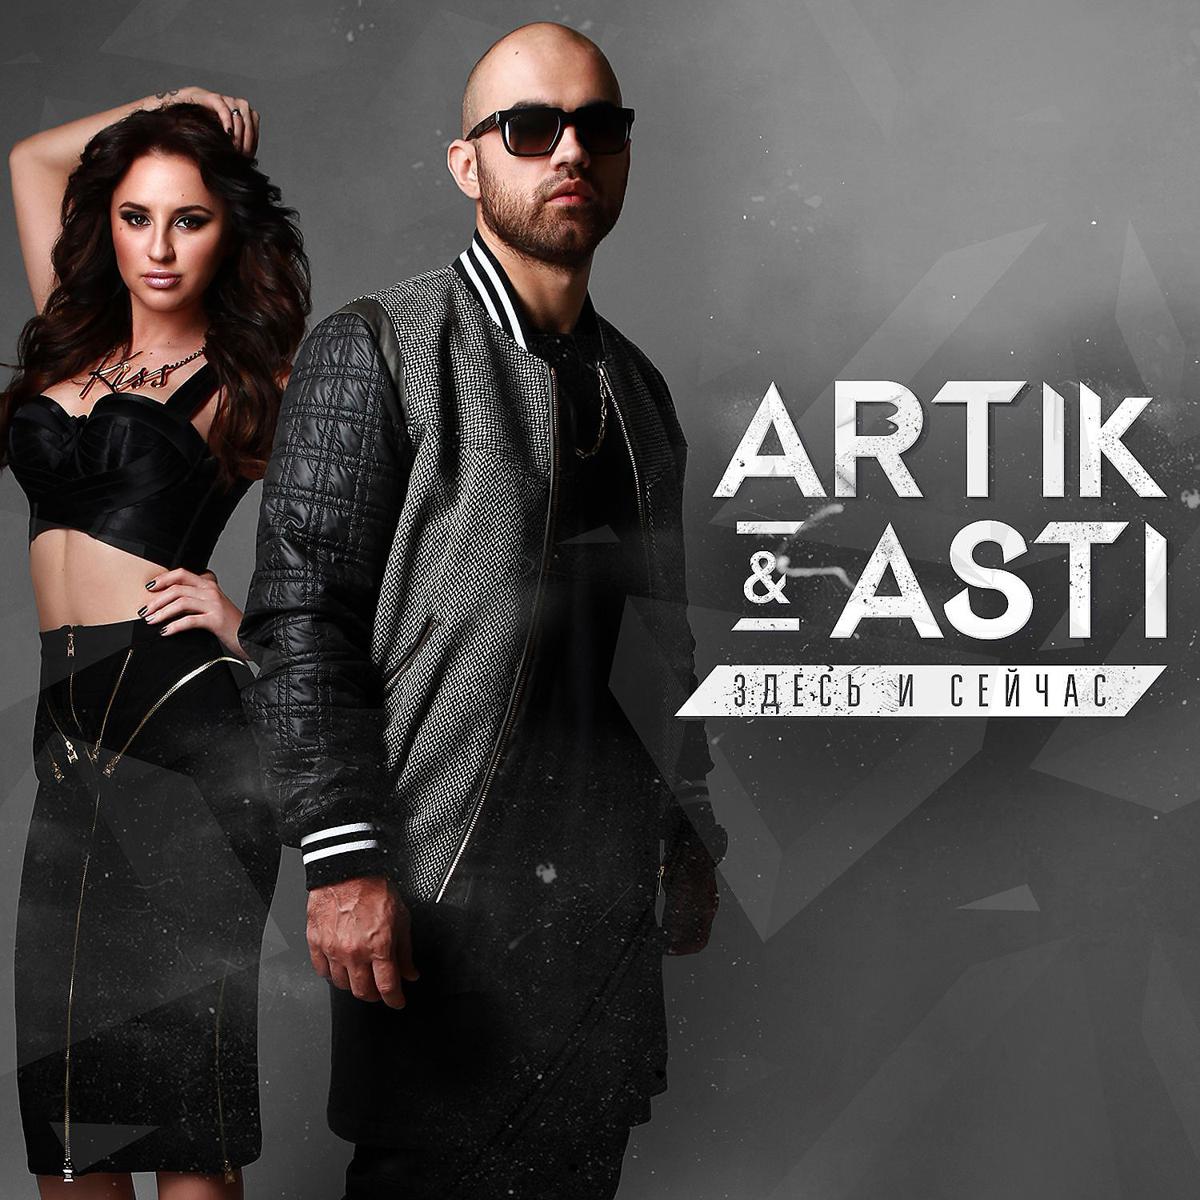 Звонкий новые песни. Артик и Асти. Artik Asti здесь и сейчас 2015. Artik Asti обложка. Артик и Асти 2014.